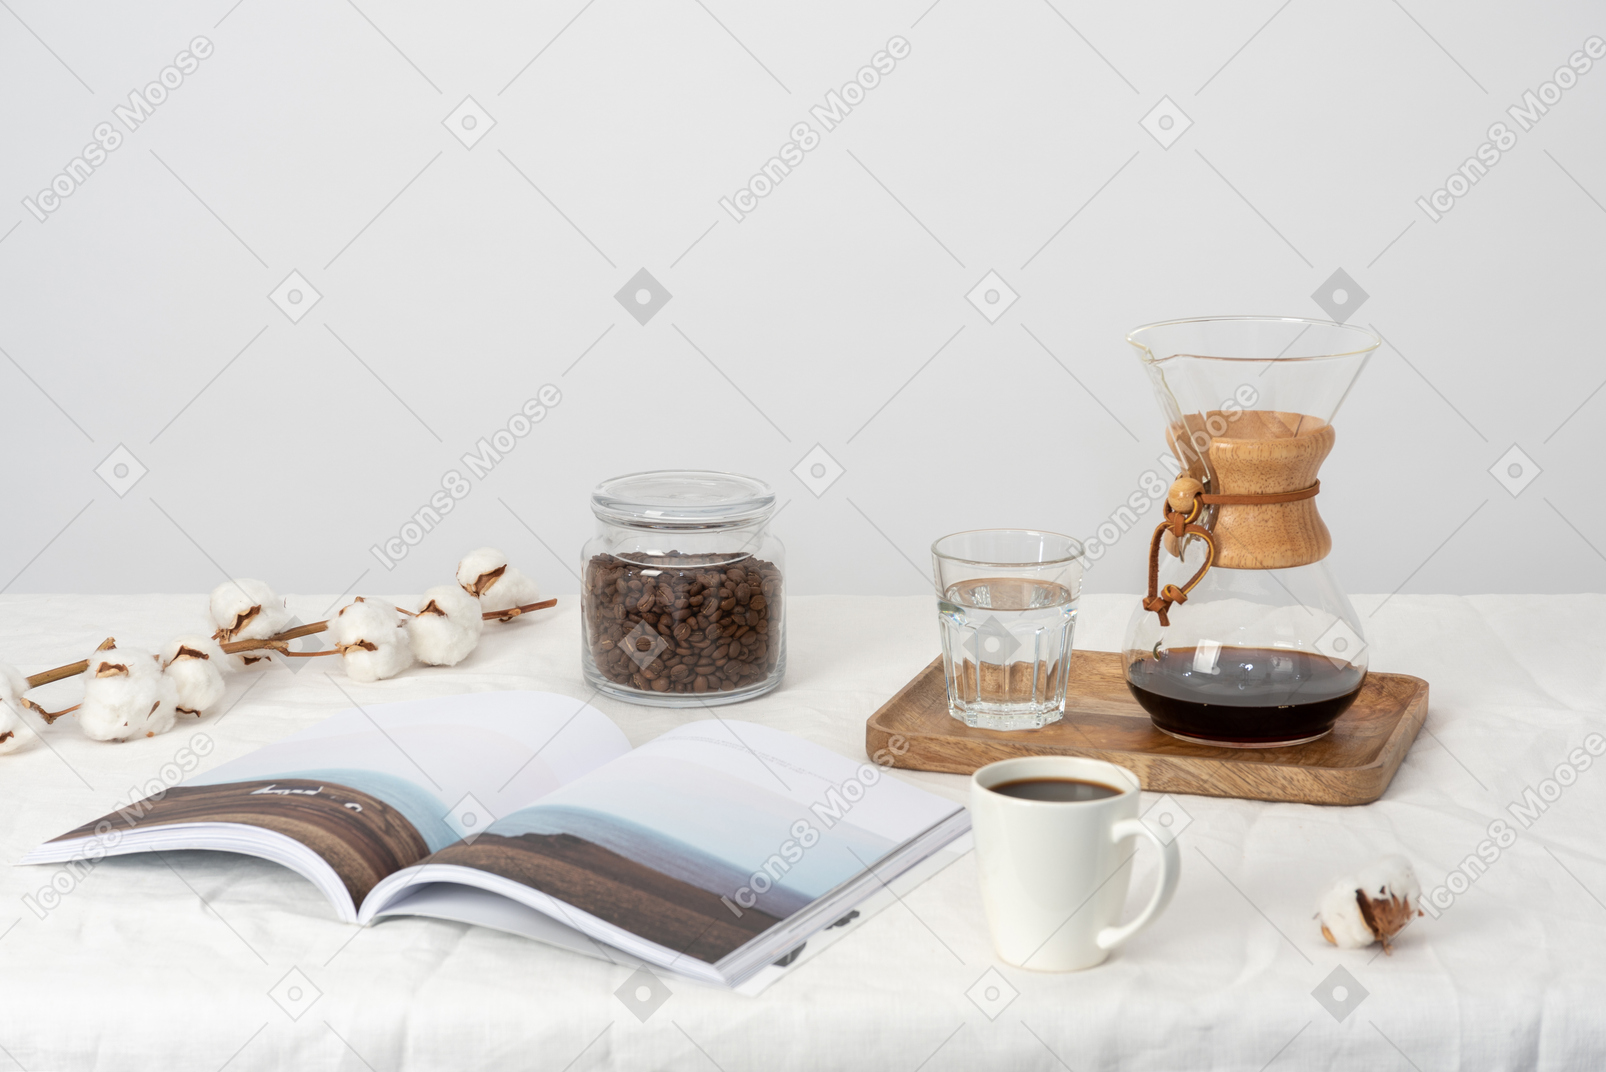 Хемекс и стакан воды на подносе, большой стакан воды, банка с кофейными зернами, магазин и веточка хлопка